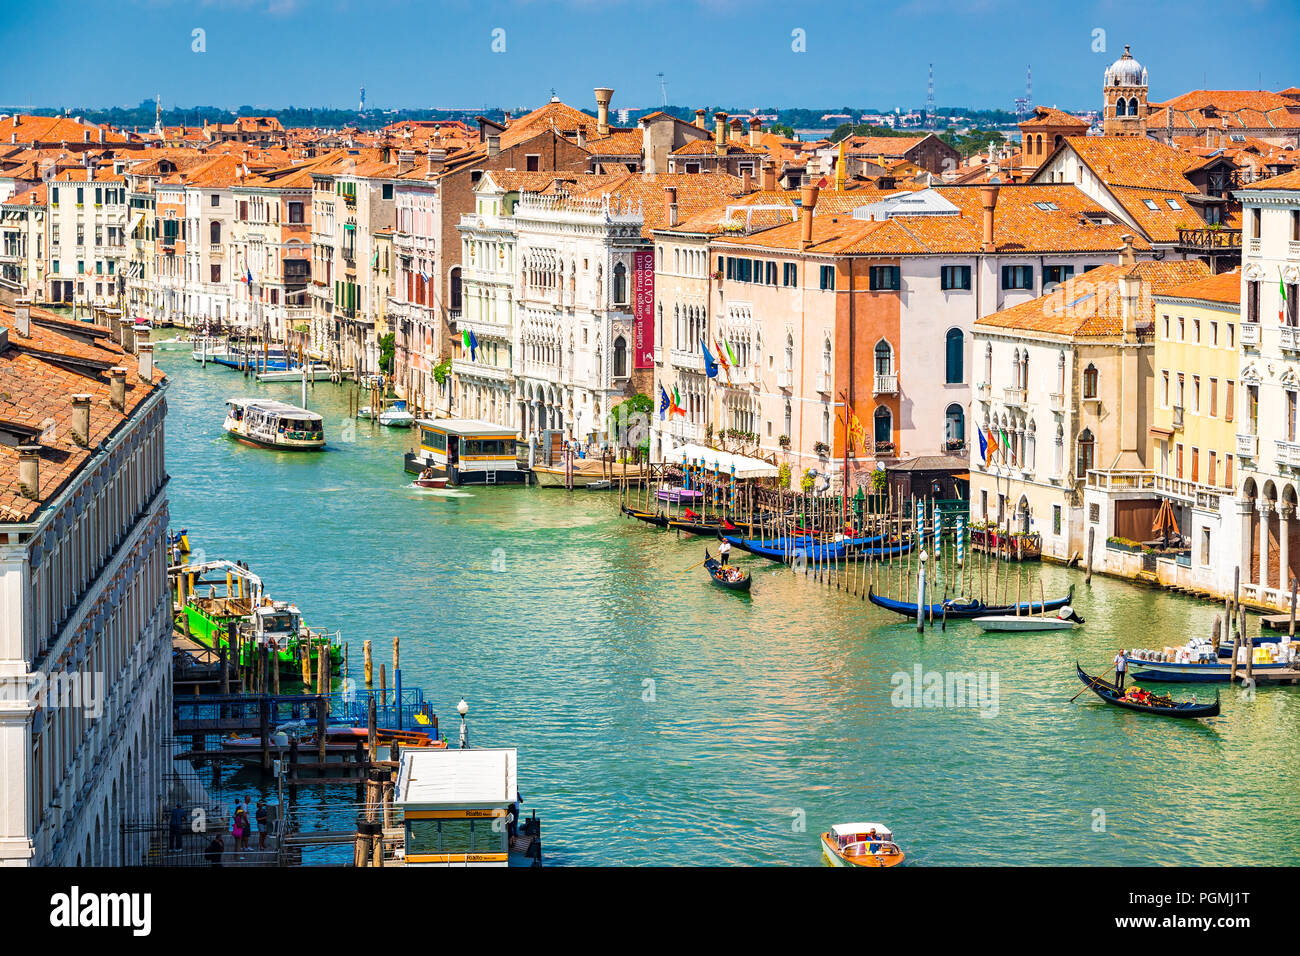 Eine Luftaufnahme des berühmten Grand Canal mit Gondeln vor Hotels und farbigen Gebäuden in Venedig, Italien Stockfoto